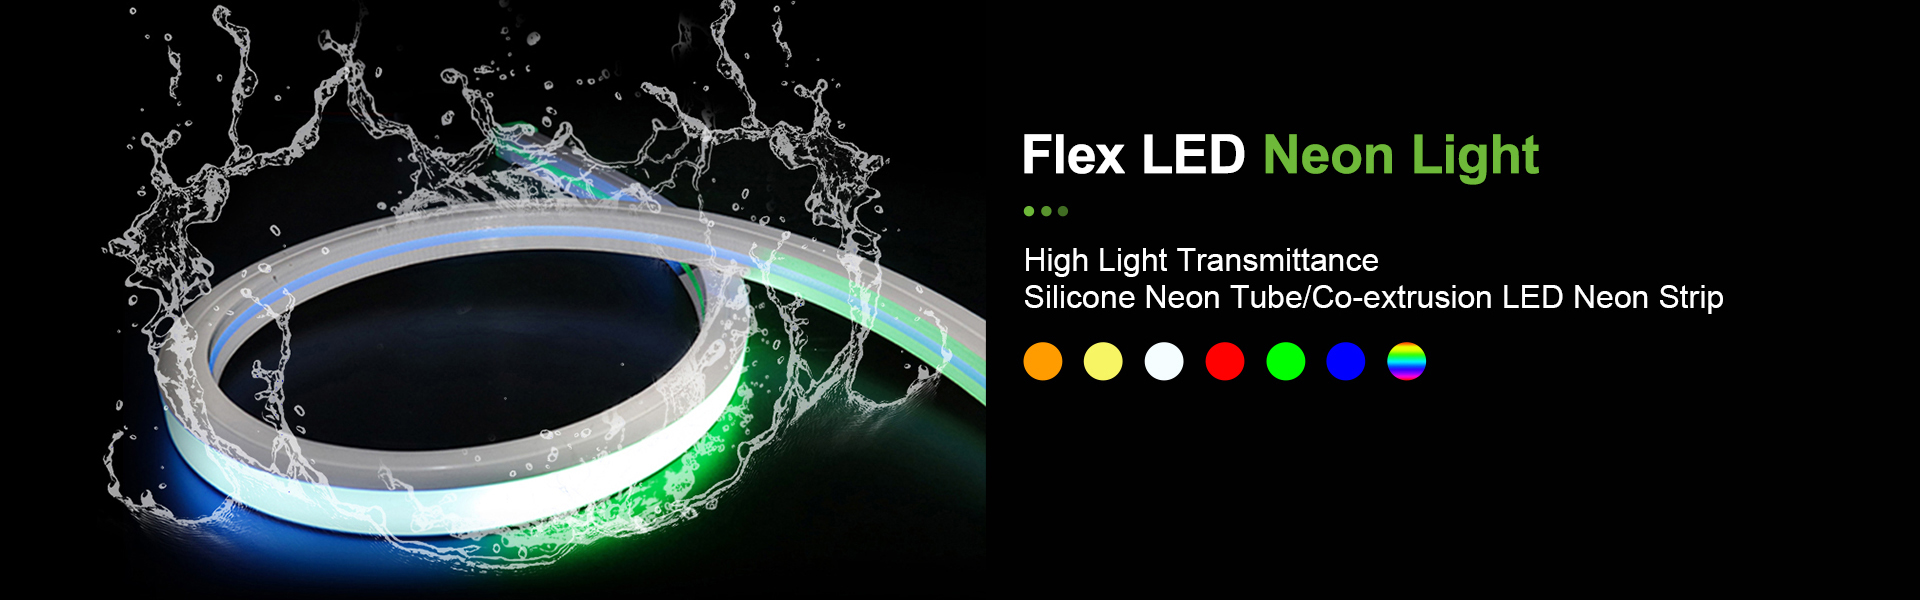 Φωτισμός λωρίδας LED, φως νέον, φωτισμός λωρίδας καλοβιομηχανίας,AWS (SZ) Technology Company Limited